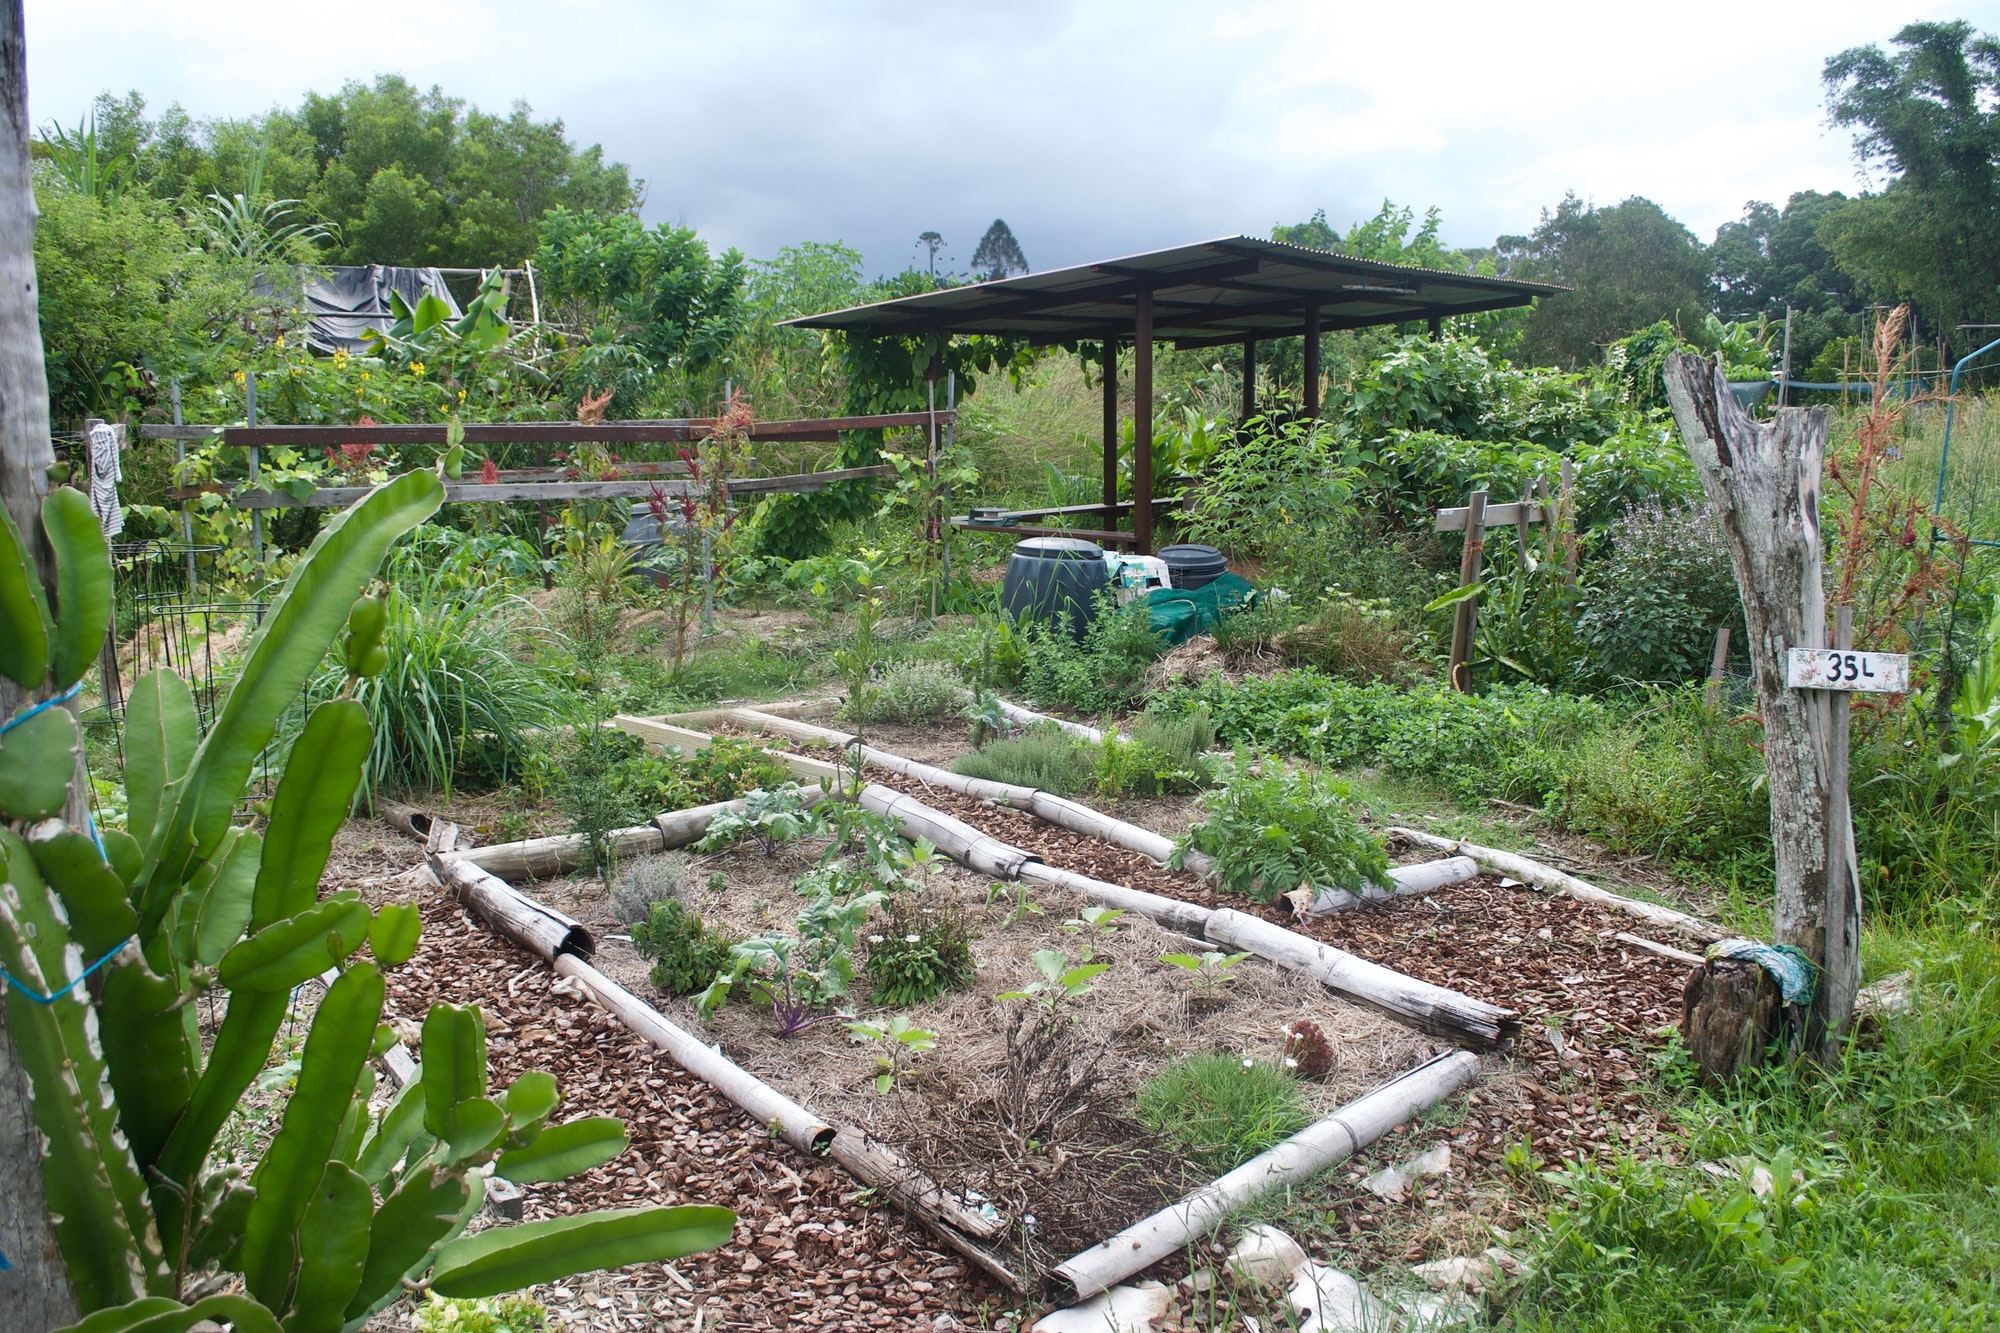 comment faire de la permaculture dans mon jardin